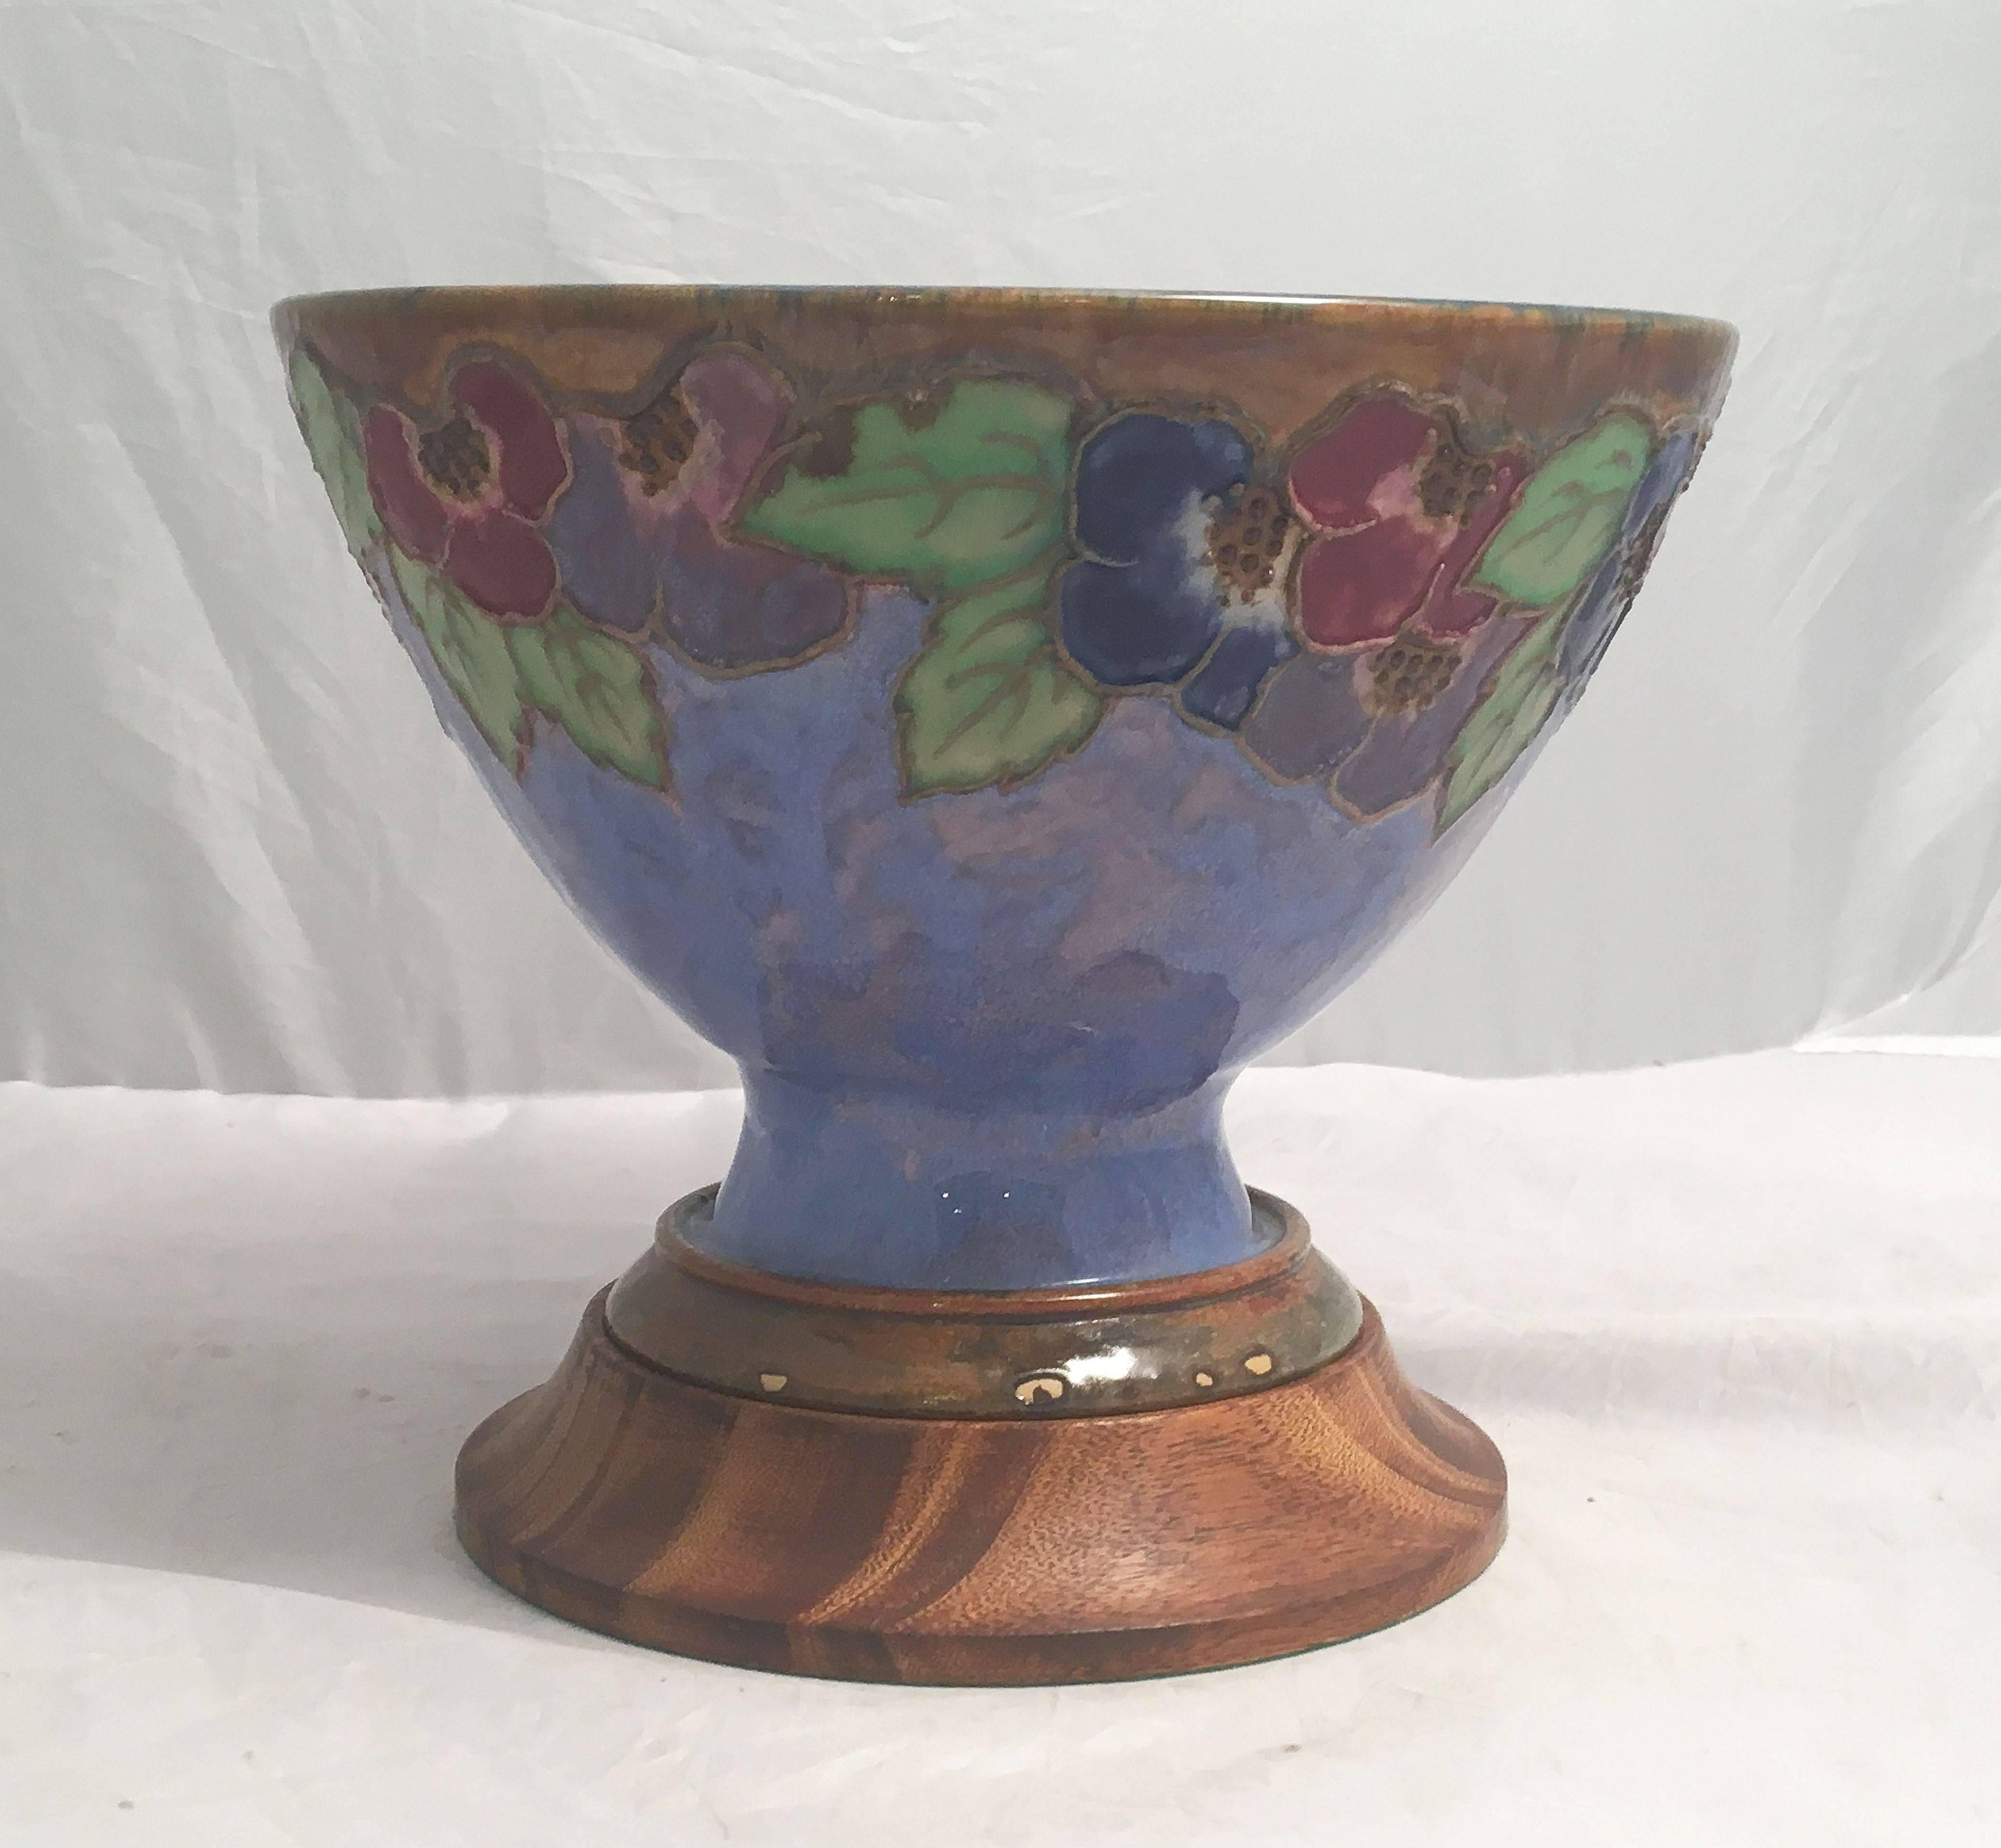 Eine feine, dekorative Keramikschüssel aus der Arts & Crafts-Periode, die auf einem runden, gedrechselten Holzsockel steht, von der berühmten englischen Keramikfirma Royal Doulton. Eingeprägtes Zeichen am Sockel.